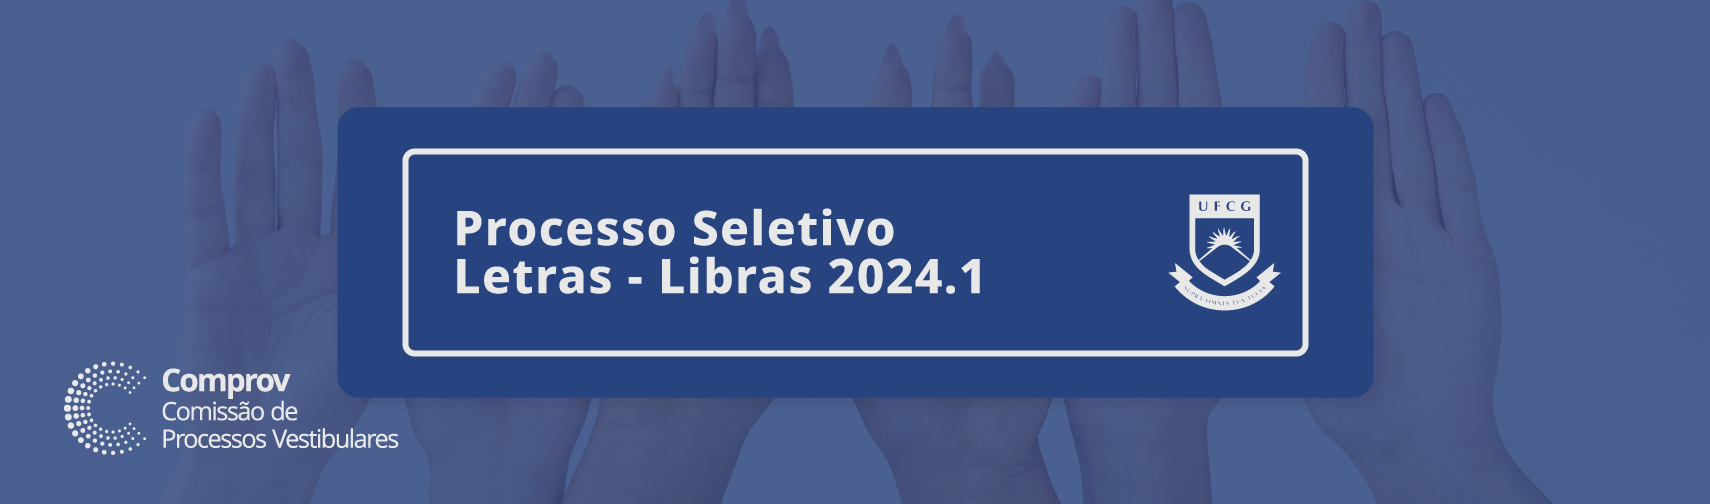 Edital Letras Libras 2024.1